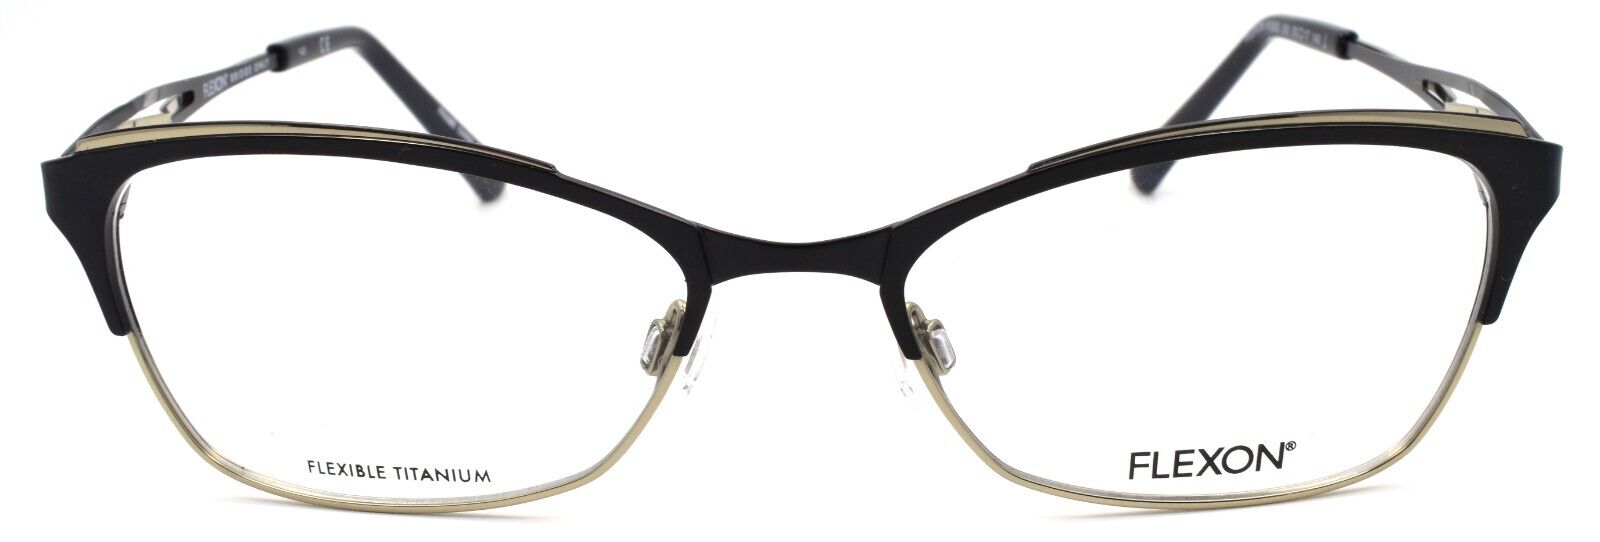 2-Flexon W3000 001 Women's Eyeglasses Frames Black 53-17-135 Titanium Bridge-883900202855-IKSpecs